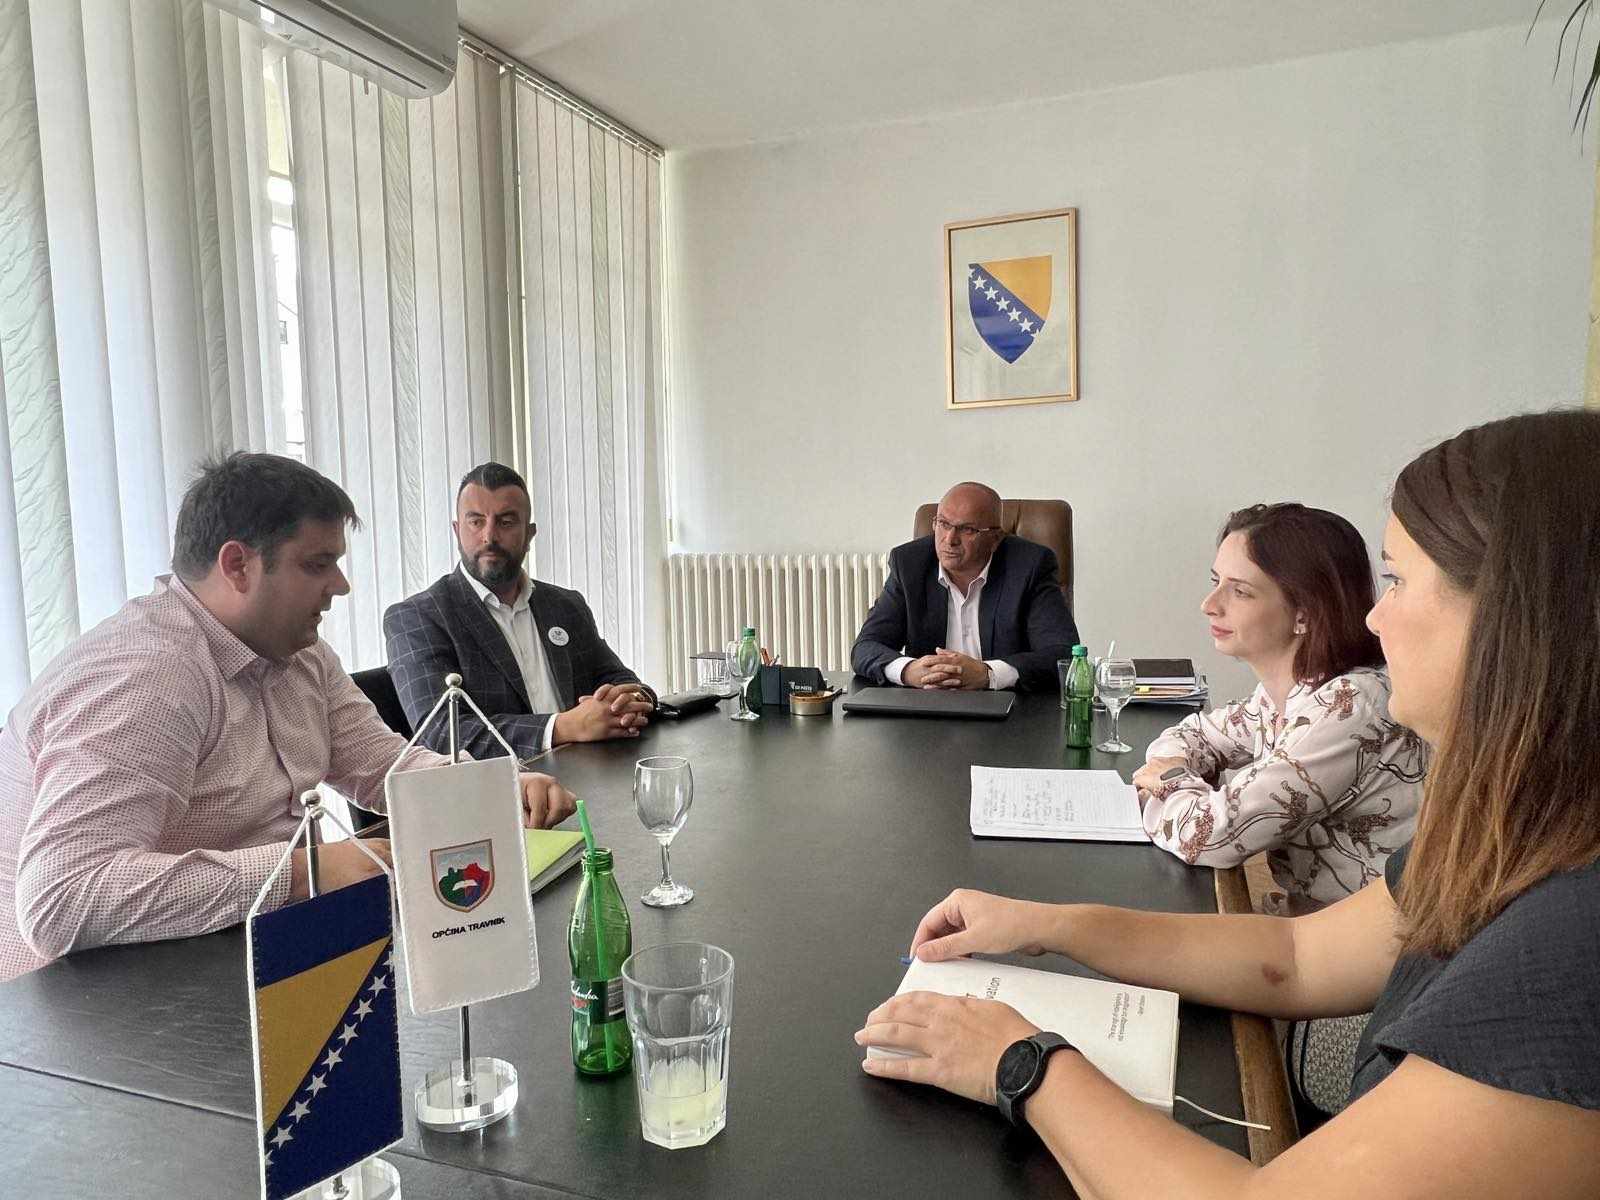 Općina Travnik ostvaruje saradnju sa "BH Futures Foundation" / Studentima iz Travnika se otvaraju nove mogućnosti za stipendiranje i usavršavanje profesionalnog zvanja